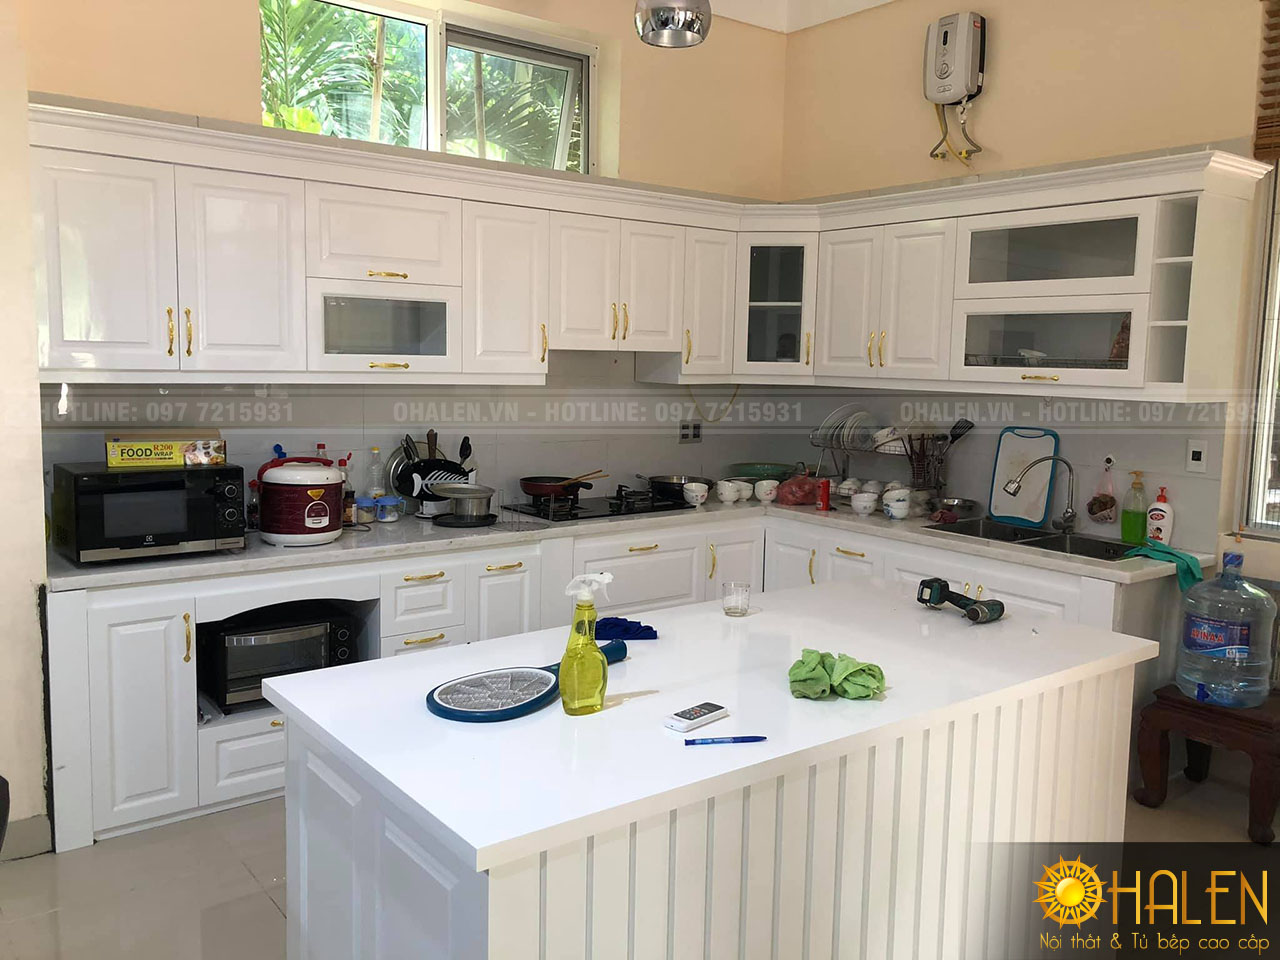 Hoàn thiện bộ tủ bếp giờ đây chưa bao giờ đơn giản đến thế. Với nhiều loại màu sắc và chất liệu khác nhau, bạn sẽ tìm được bộ tủ bếp vừa ý cho gia đình mình. Hãy xem hình ảnh để xem sự hoàn thiện của tủ bếp trong căn phòng ấm cúng của bạn.